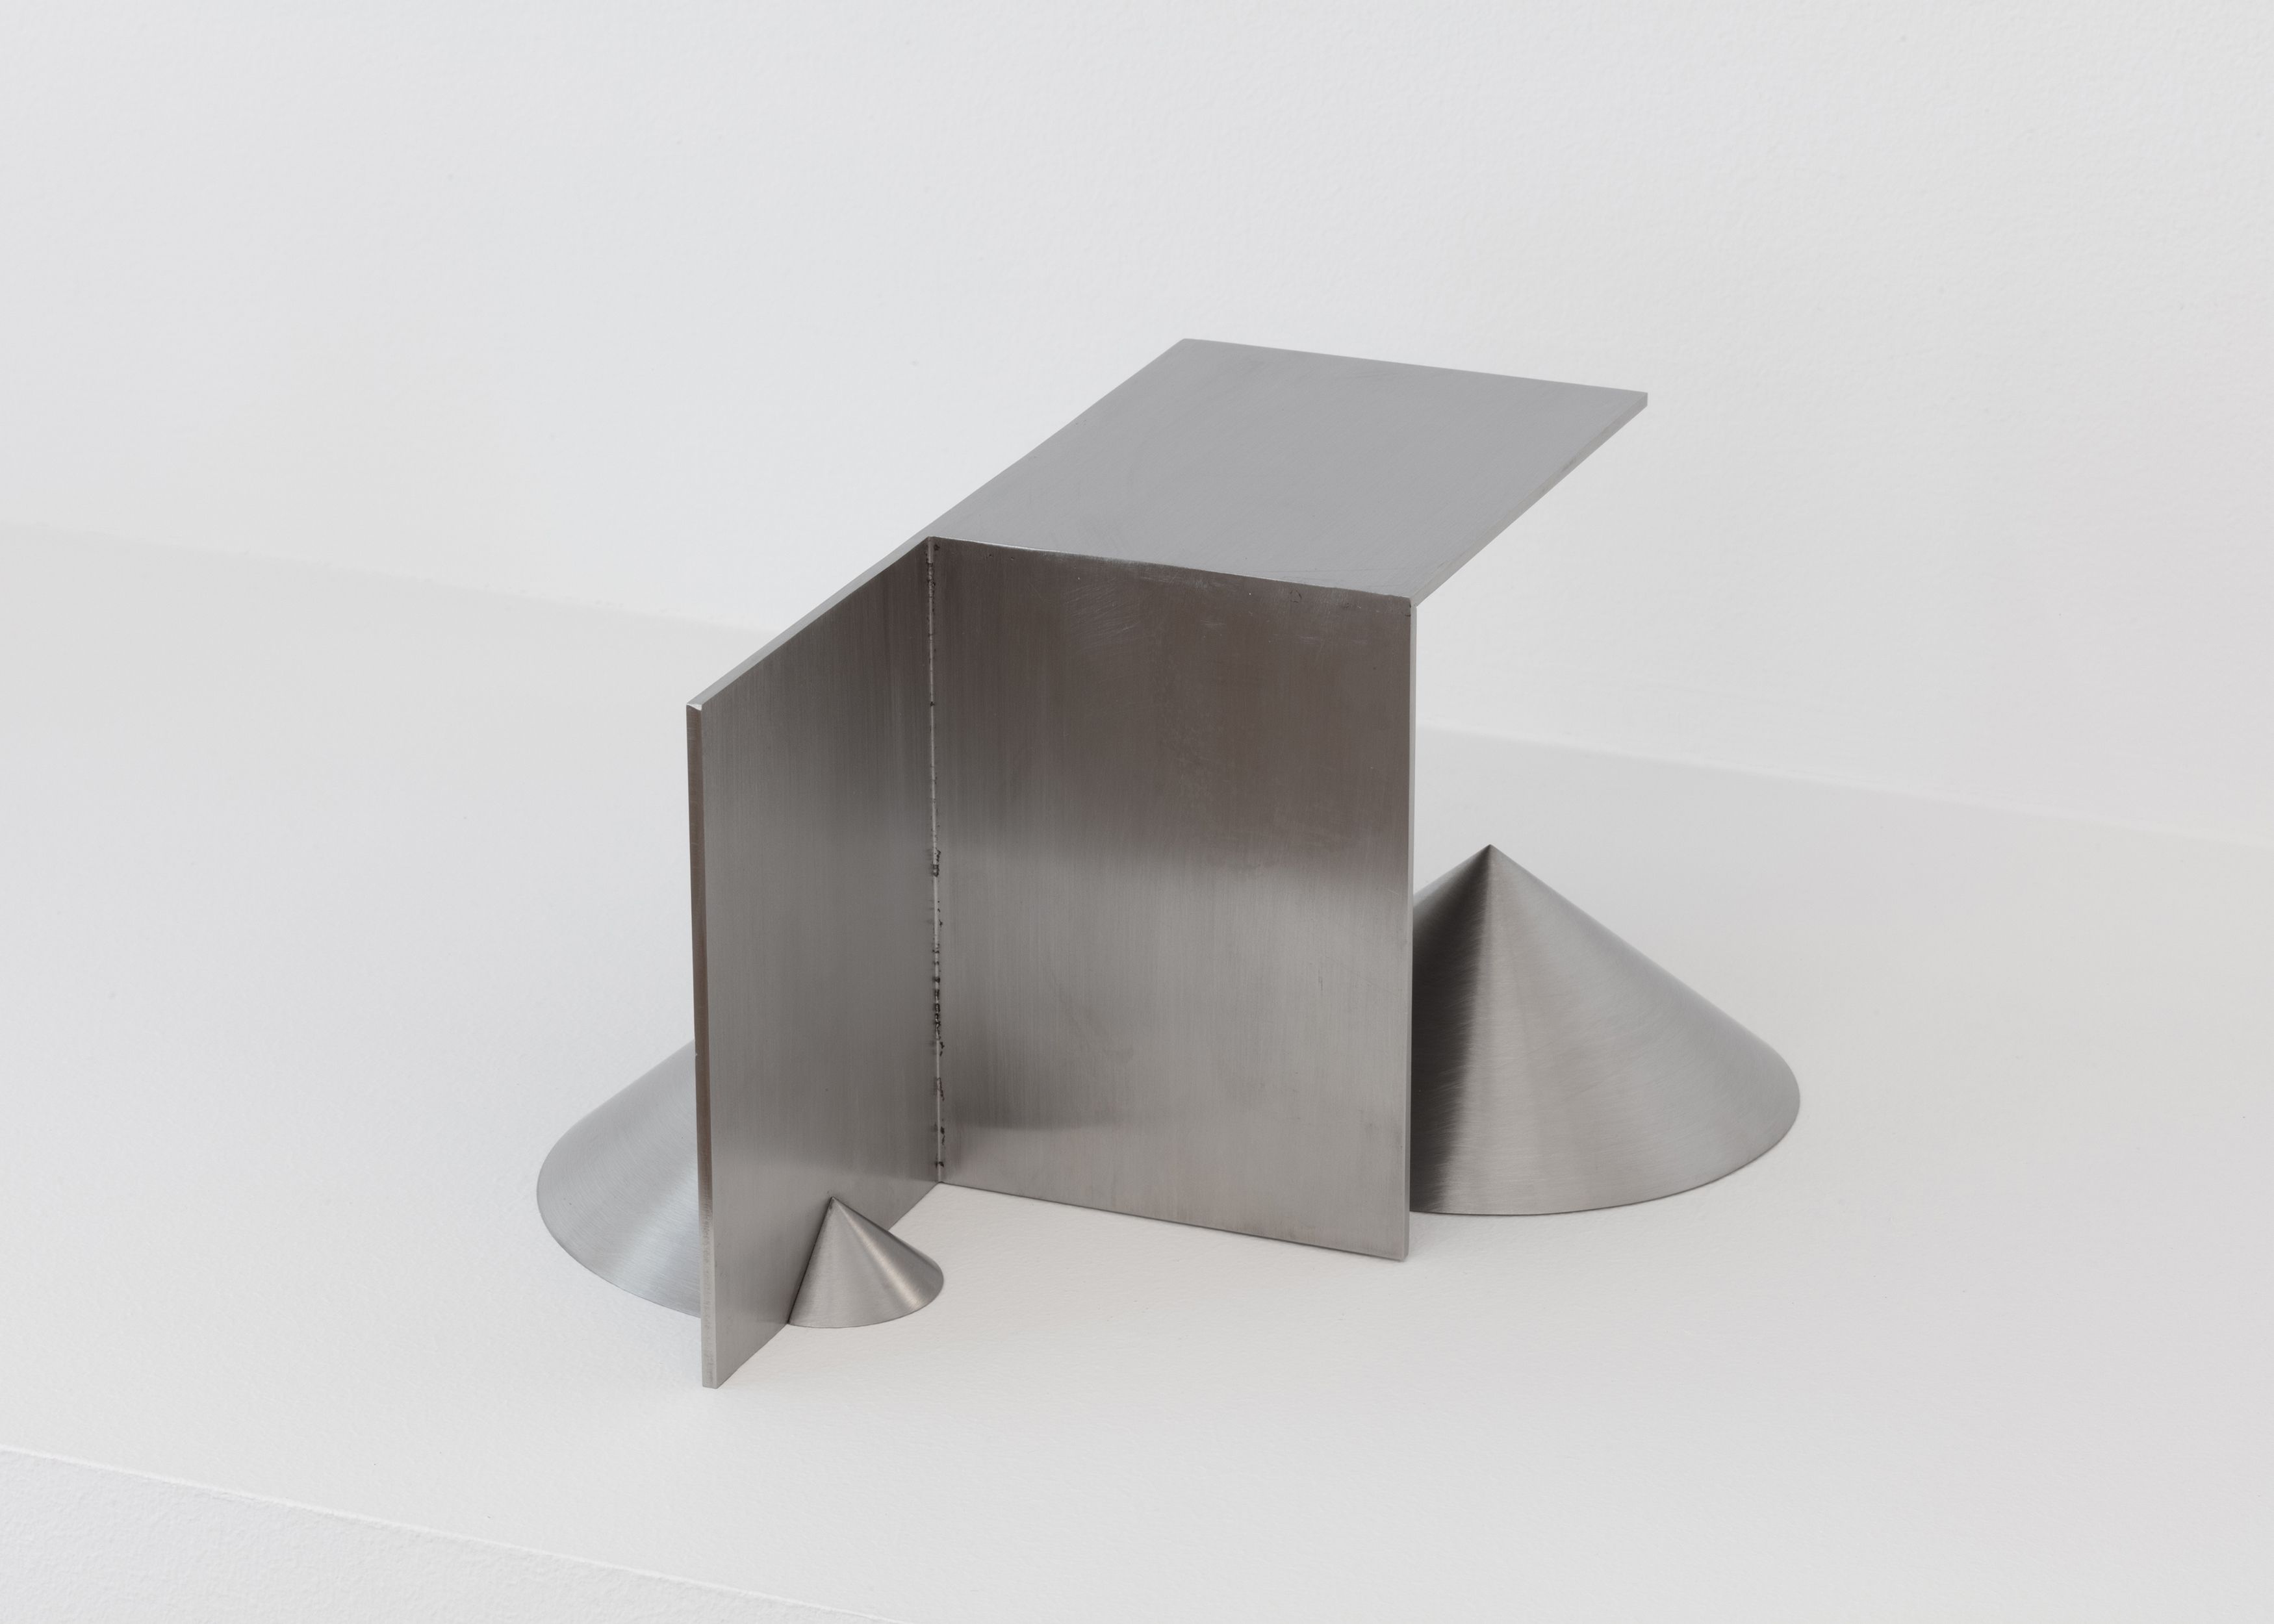 Stephen Lichty, Form 2, 2021, Stephen Lichty, Form 2, 2021, stainless steel, 4 x 7 1/4 x 6 1/2 in. (10.16 x 18.42 x 15.51 cm)